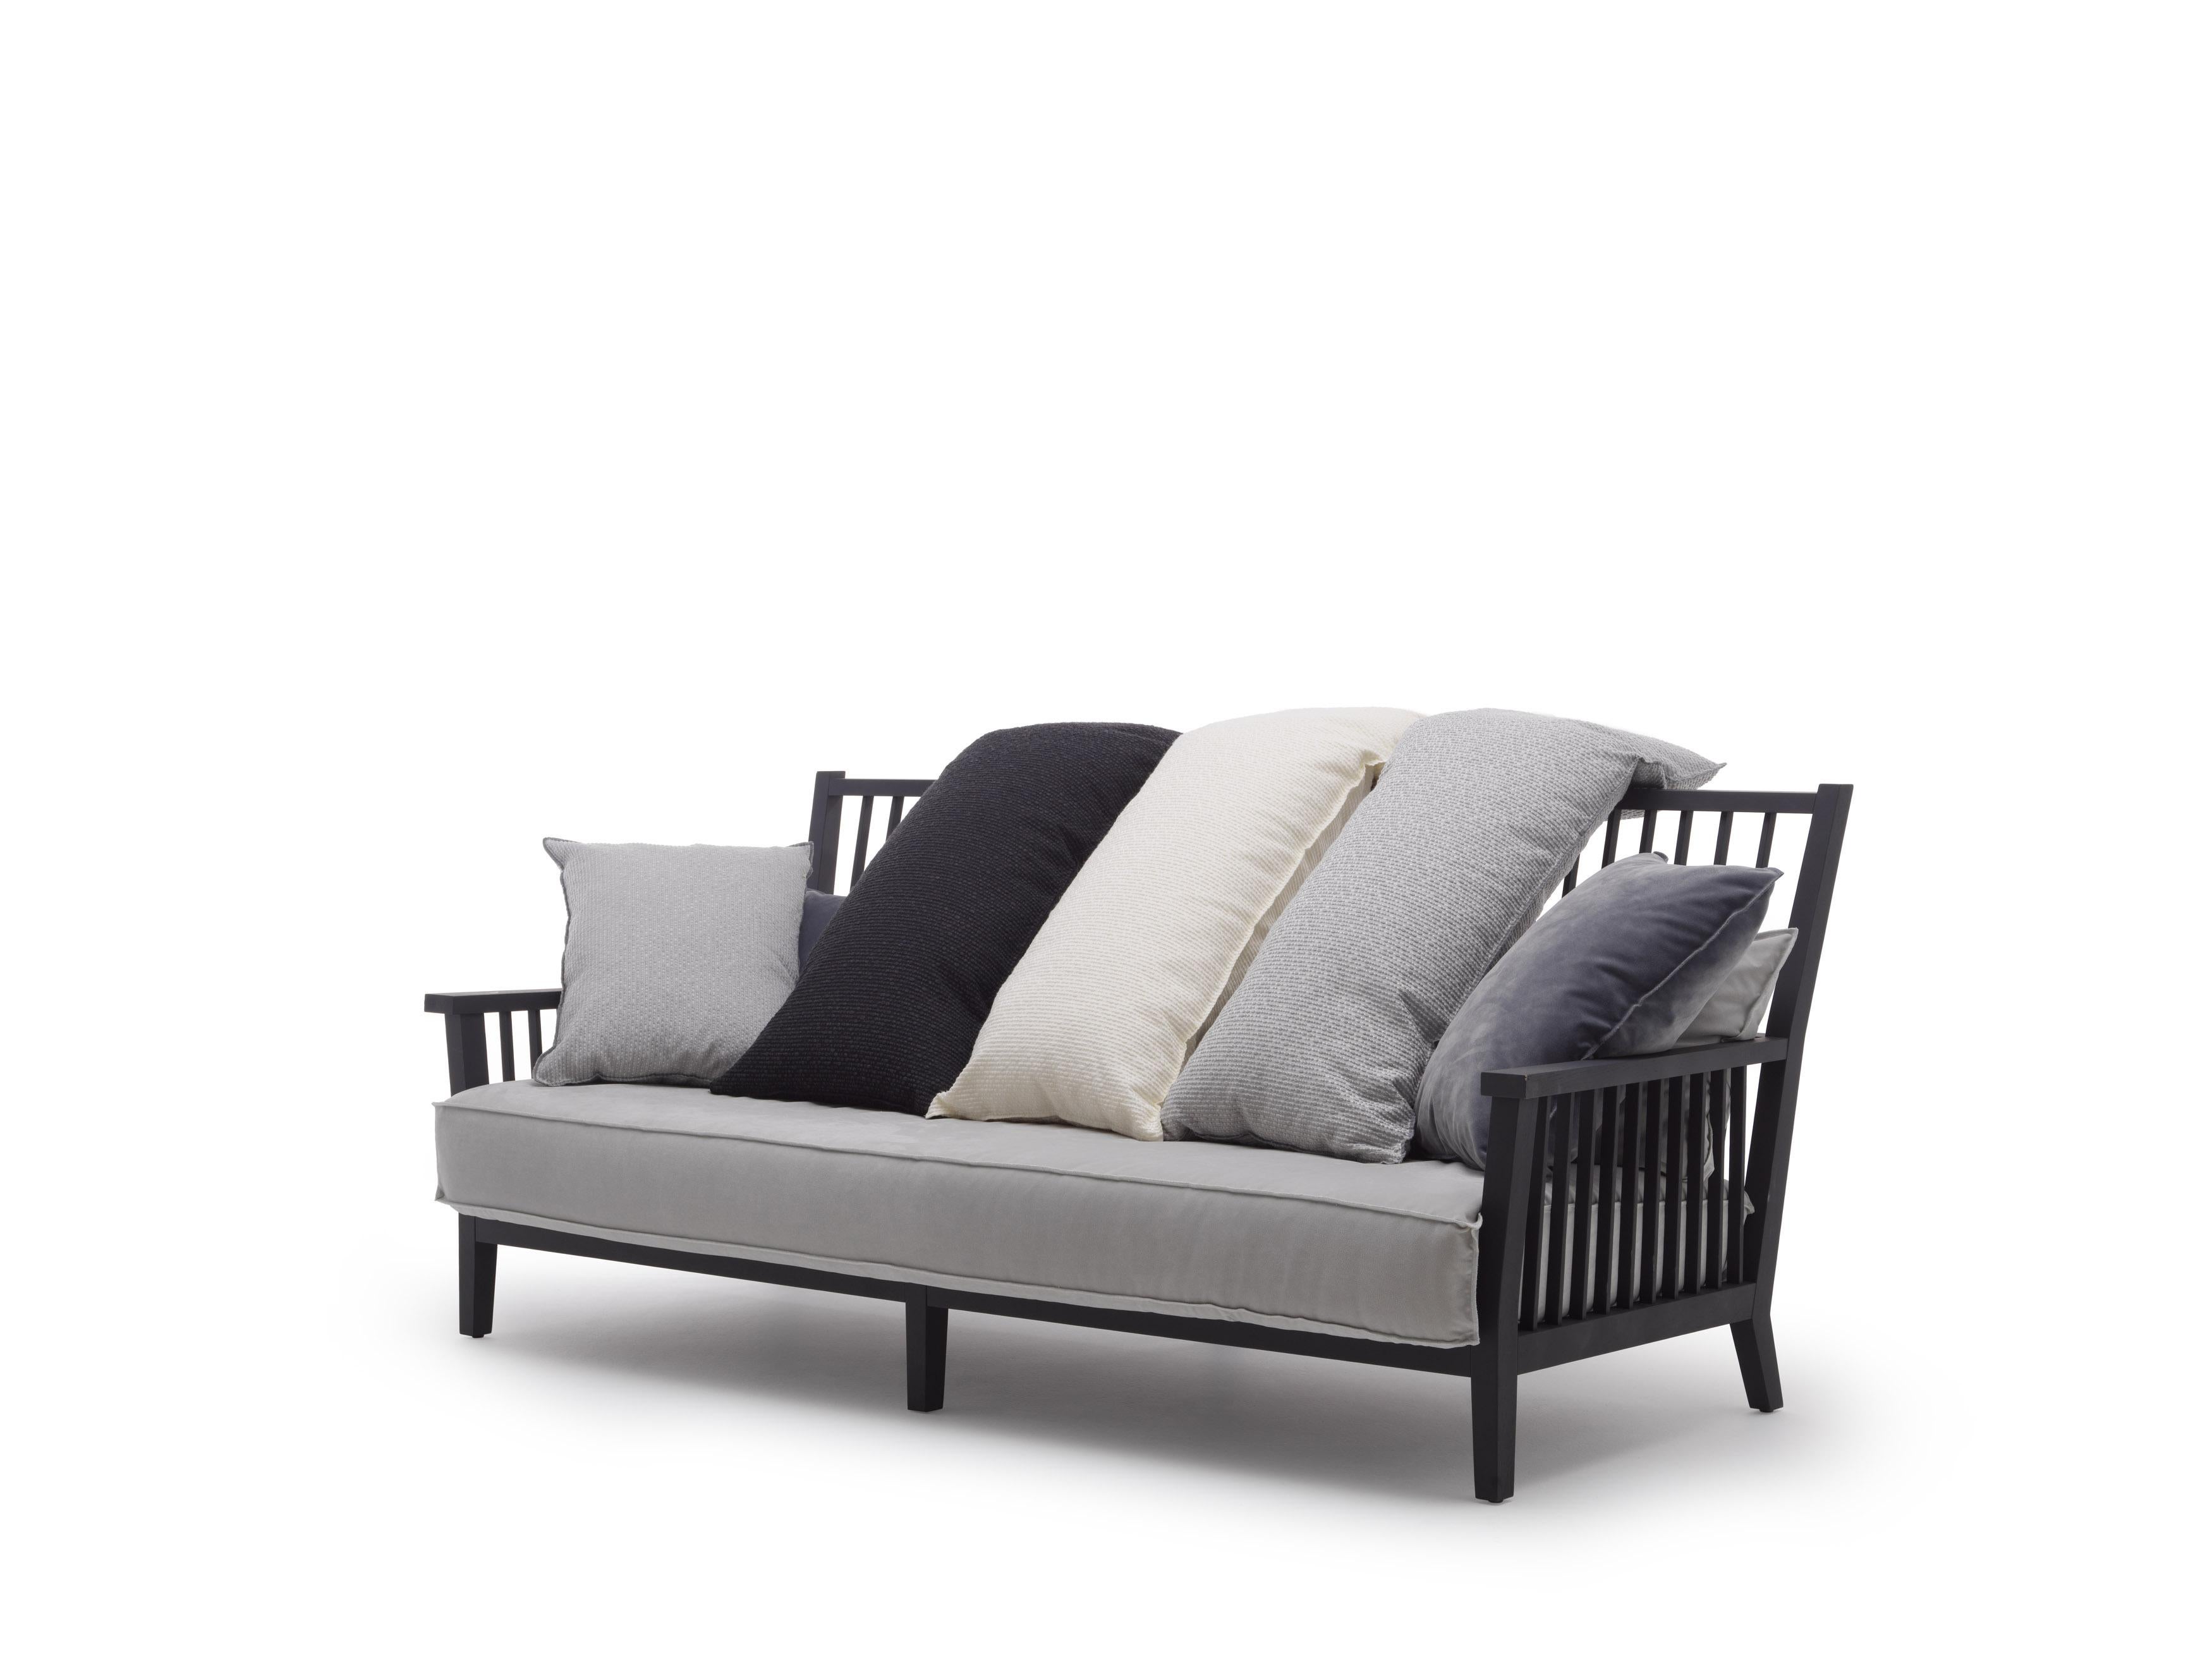 Das graue Dreisitzer-Sofa 03 mit seinen quadratischen und linearen Linien erinnert an den klassischen nordischen Stil. Der angenehme Kontrast zwischen der Wesentlichkeit der Struktur aus naturlackiertem Canaletto-Nussbaum, gebleichter Eiche oder